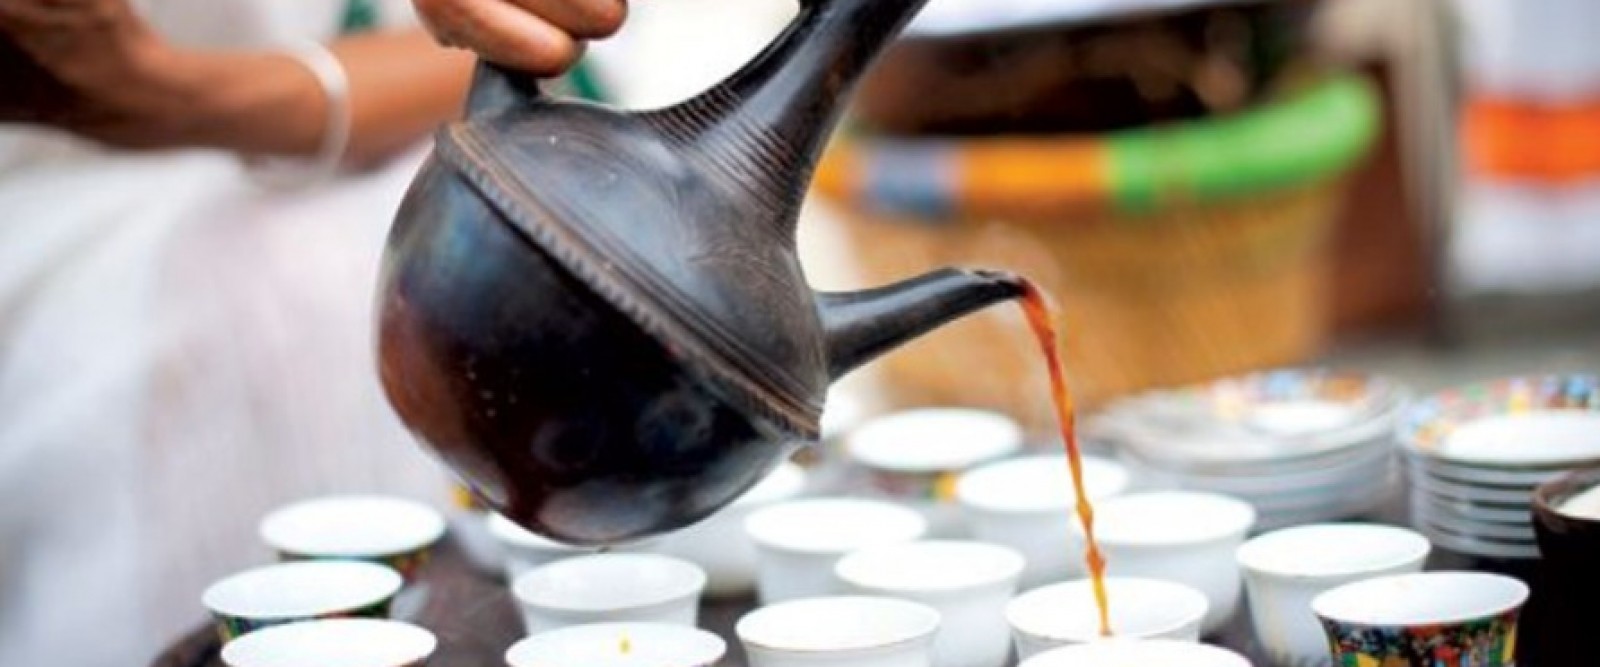 LA CERIMONIA DEL CAFFÈ ETIOPE: UNA MAGICA TRADIZIONE